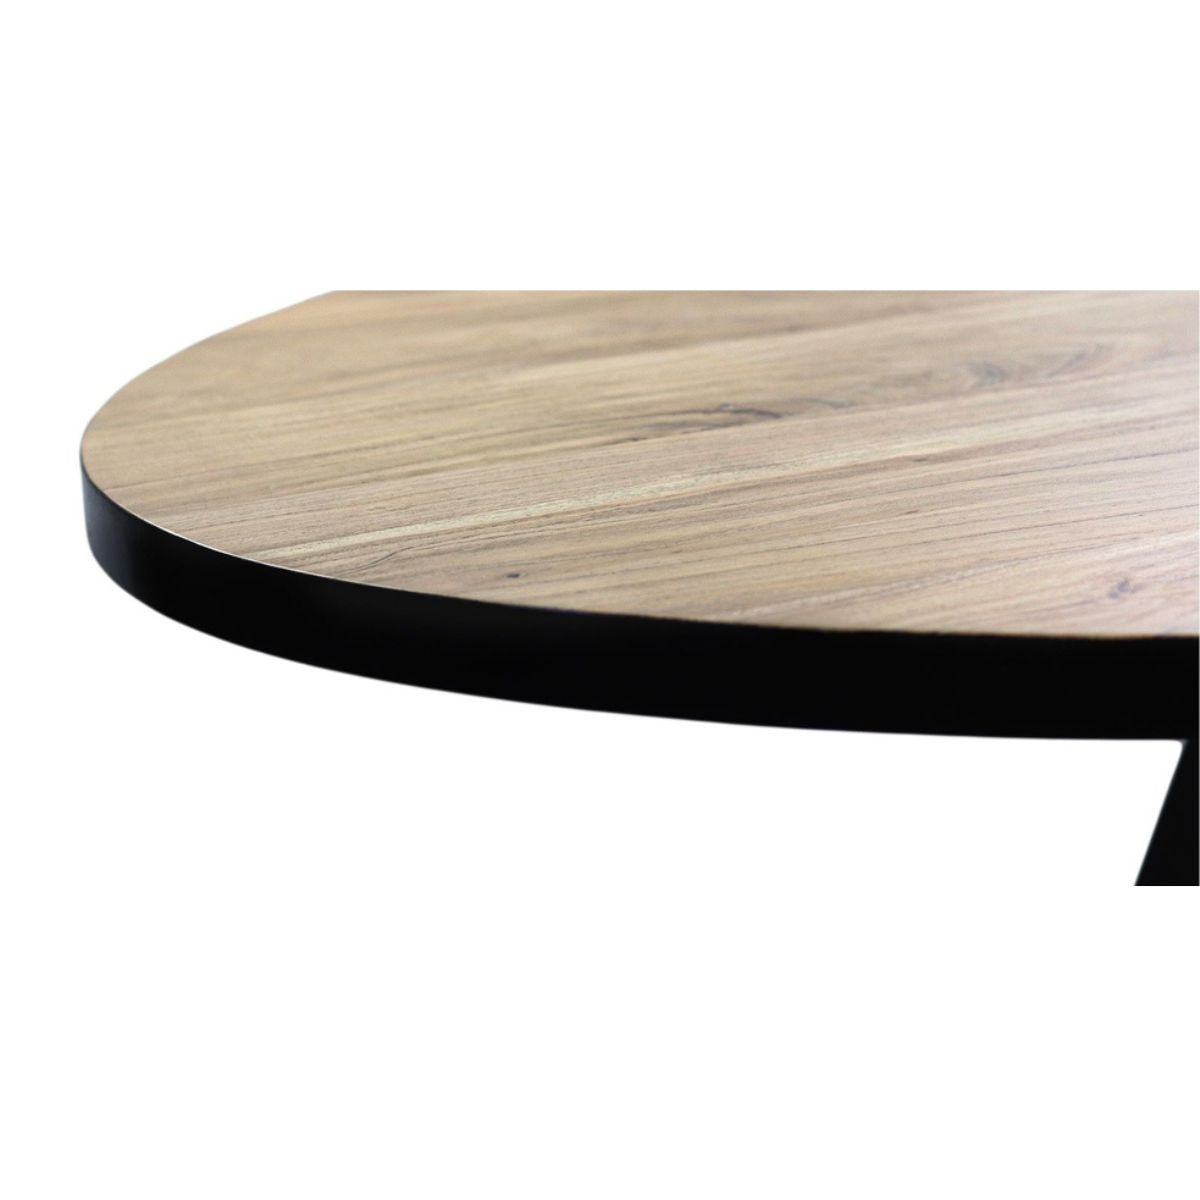 Trendy en functioneel design - Geniet van de combinatie van natuurlijke materialen en een tijdloos ontwerp met de Ovale Eettafel Milano van acaciahout/metaal.